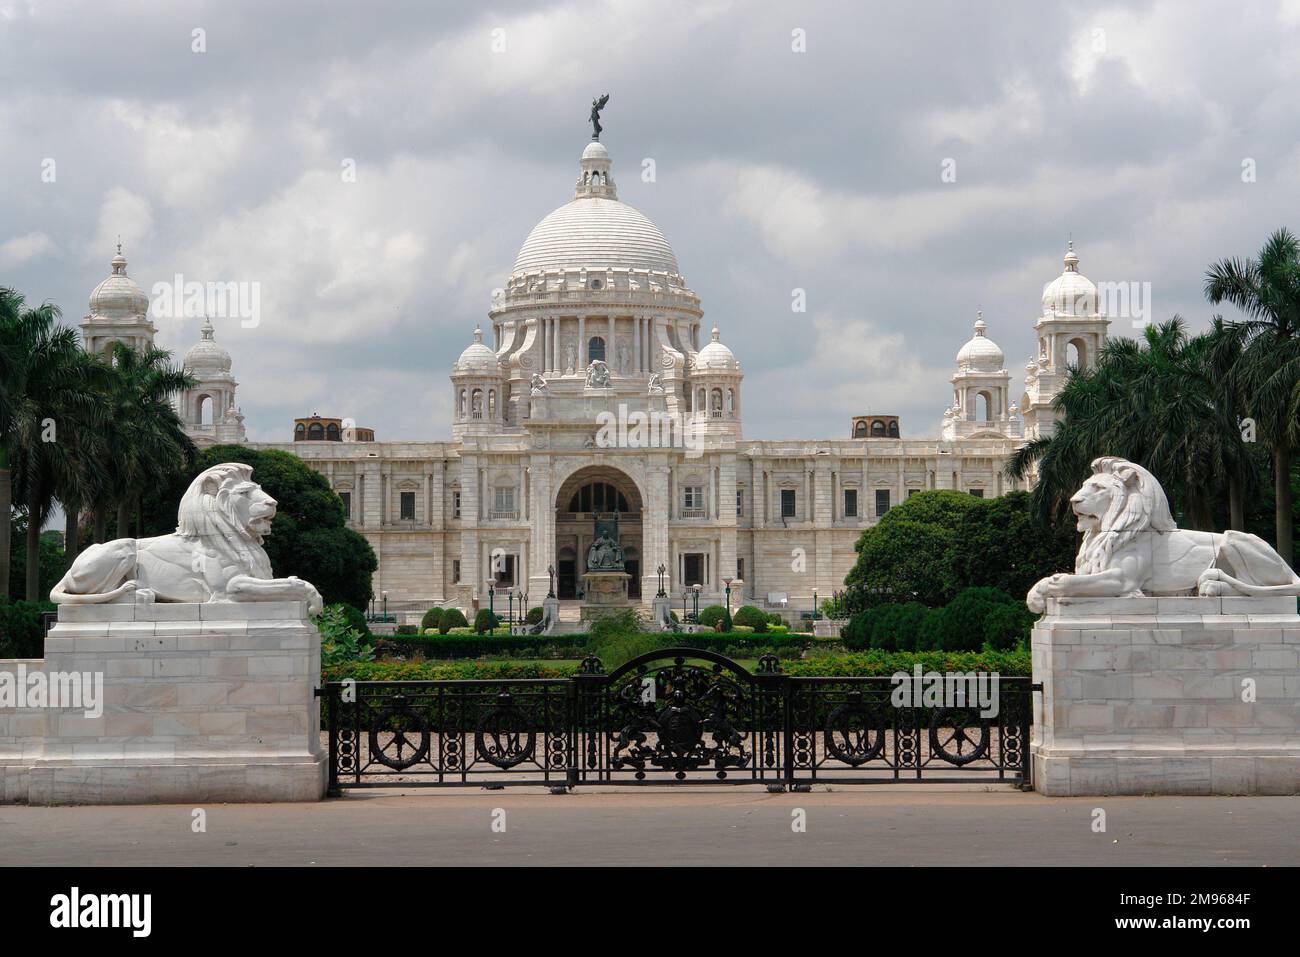 Le Victoria Memorial à Kolkata (Calcutta), en Inde. Il a été construit entre 1906 et 1921 comme un mémorial à la reine Victoria de Grande-Bretagne et l'impératrice de l'Inde. Le bâtiment est maintenant un musée. Banque D'Images